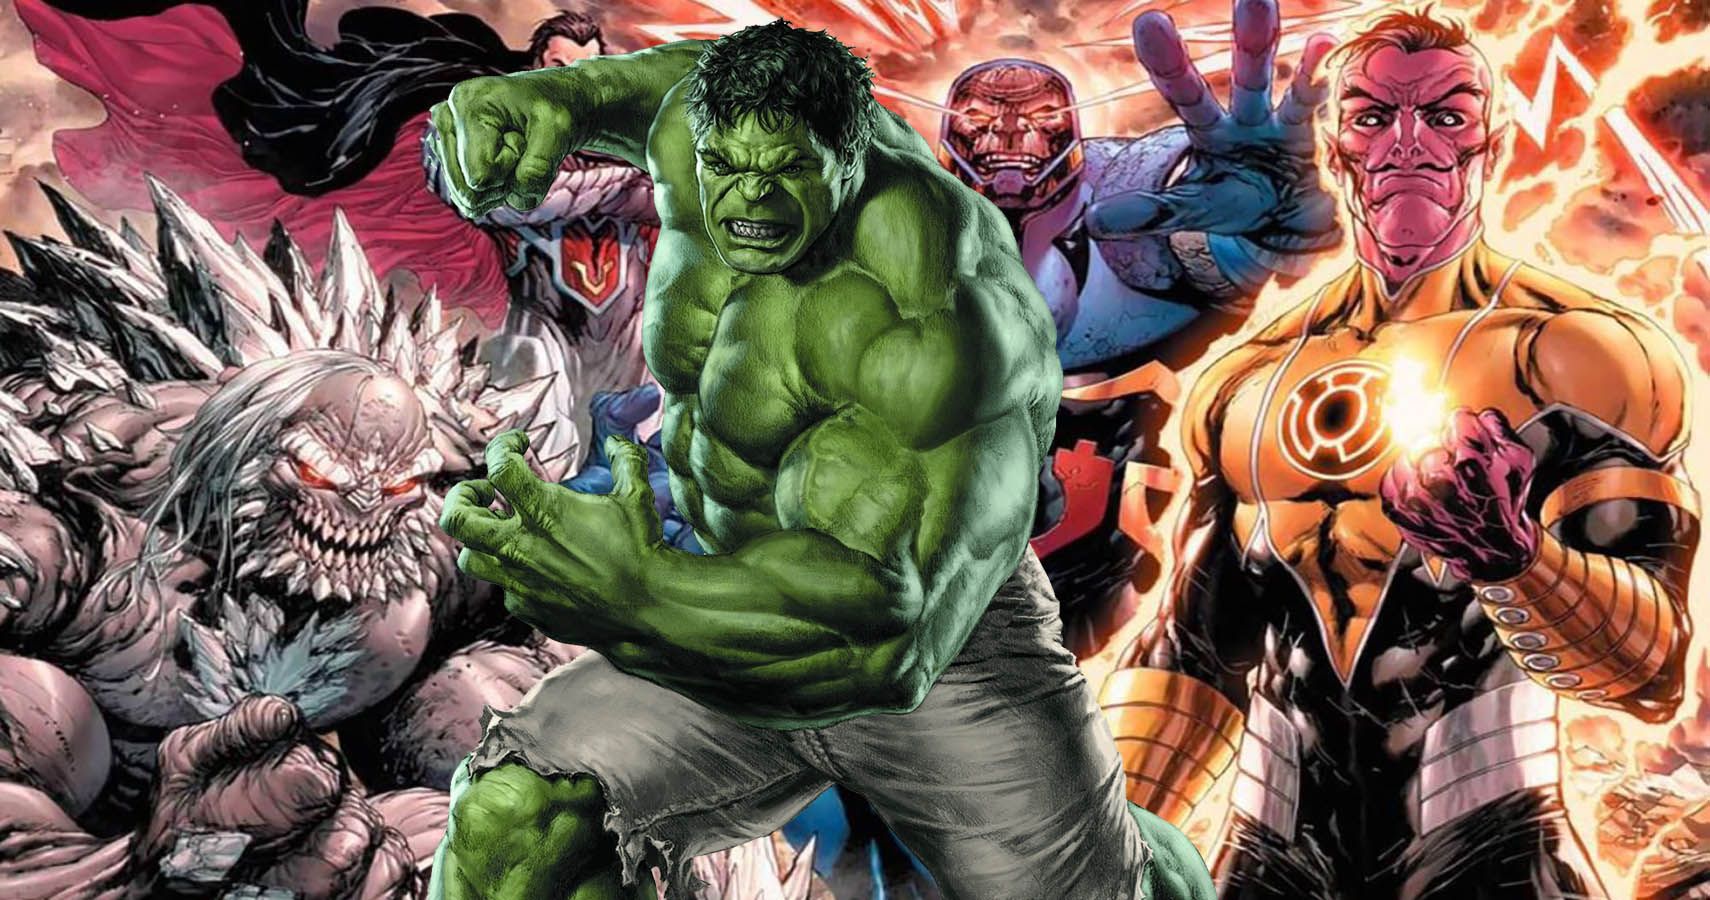 Download Half Body Incredible Hulk Wallpaper | Wallpapers.com